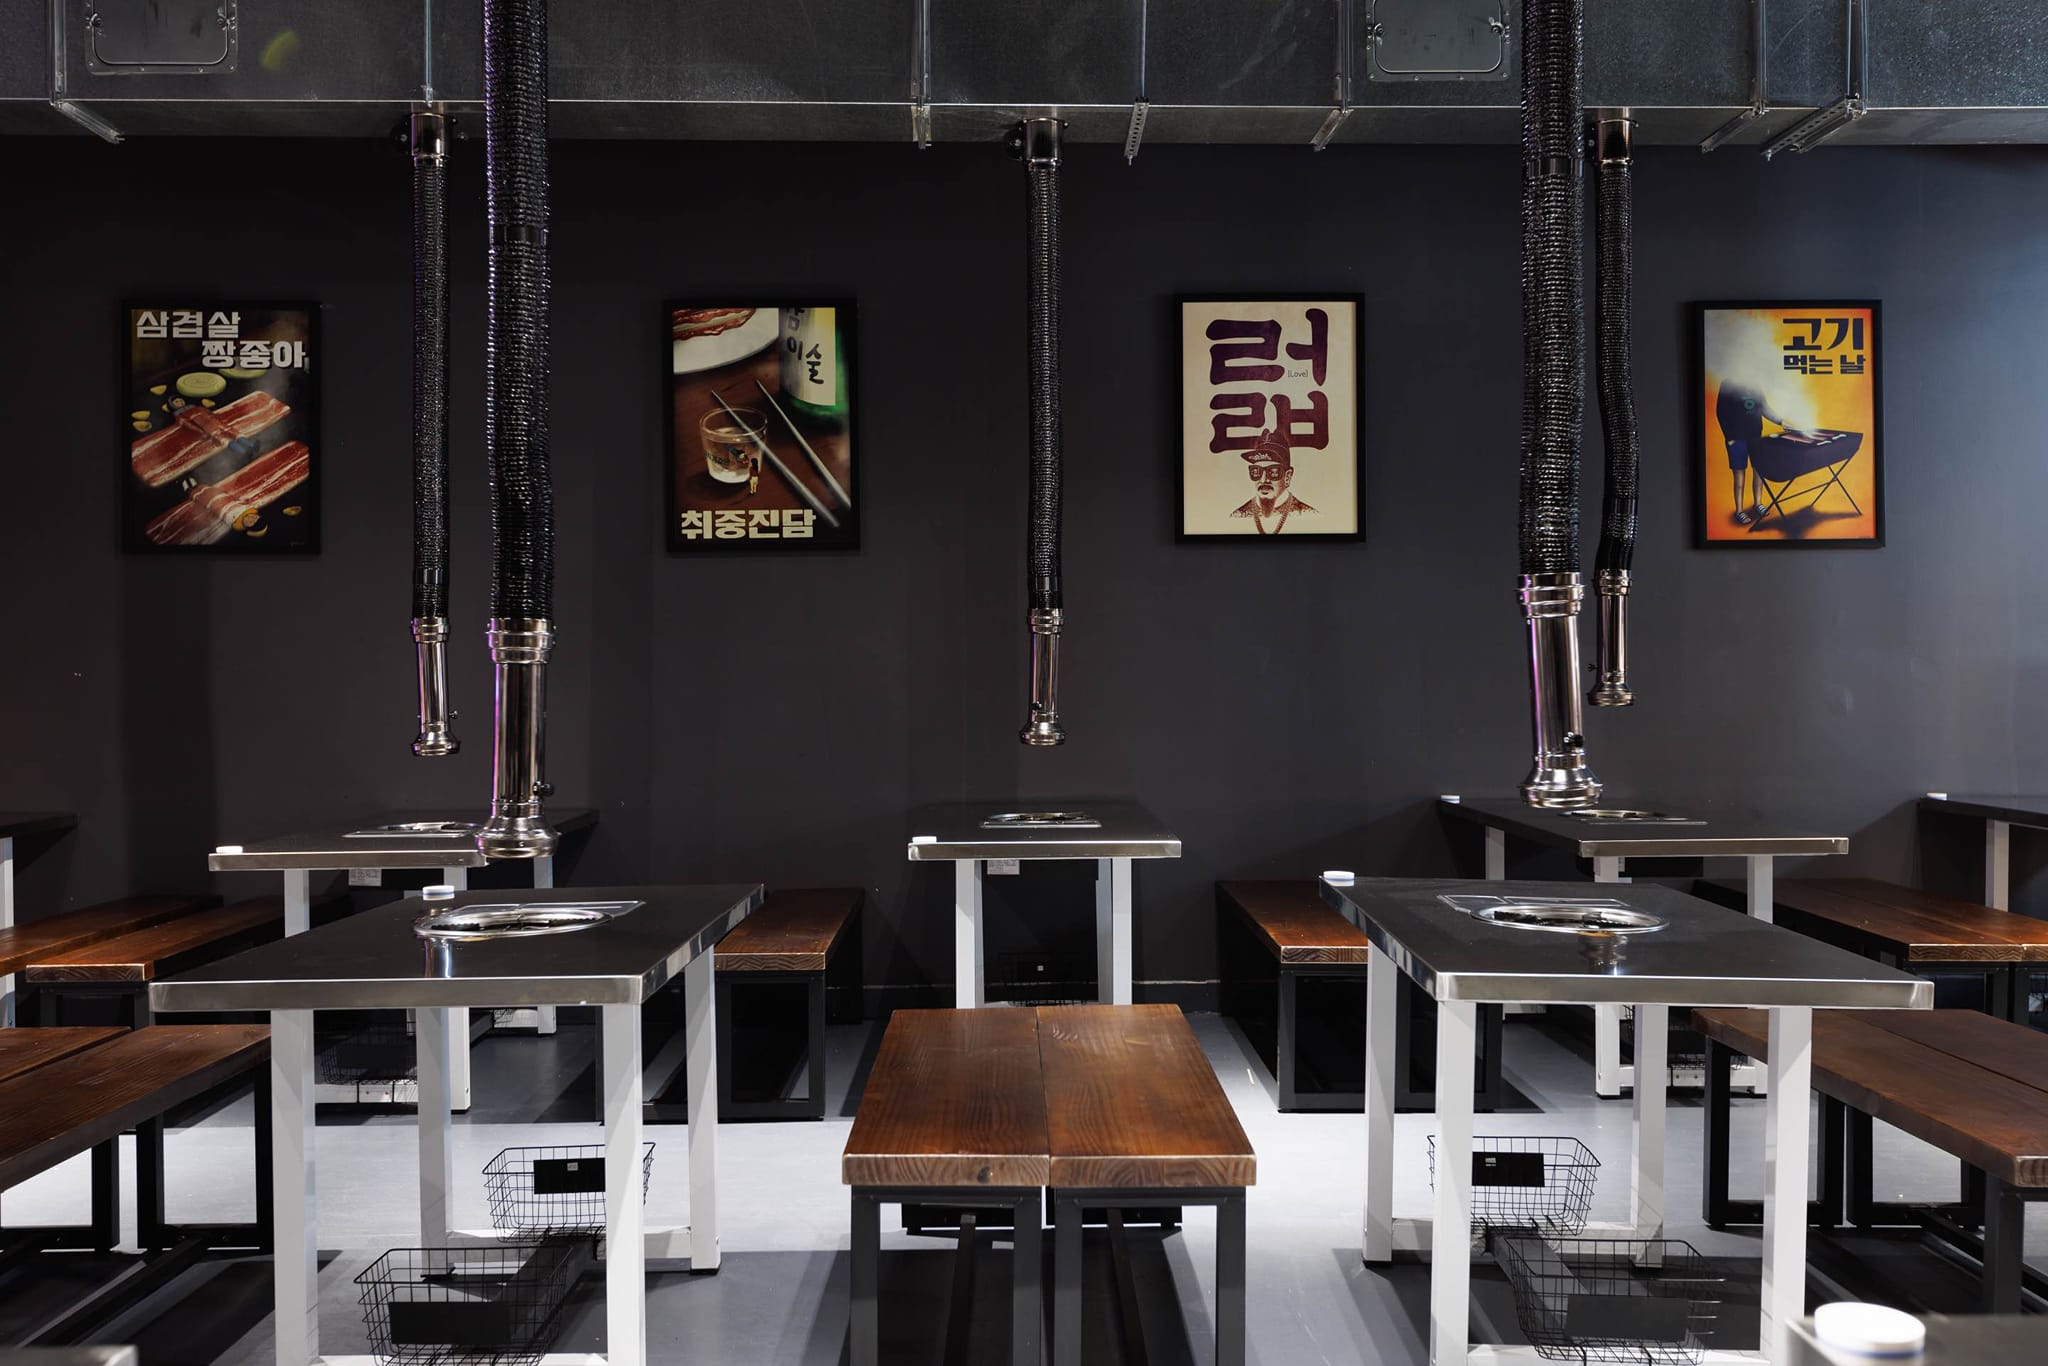 Thiết kế mẫu nhà hàng Hàn Quốc theo phong cách buffet yêu cầu không gian khá rộng rãi